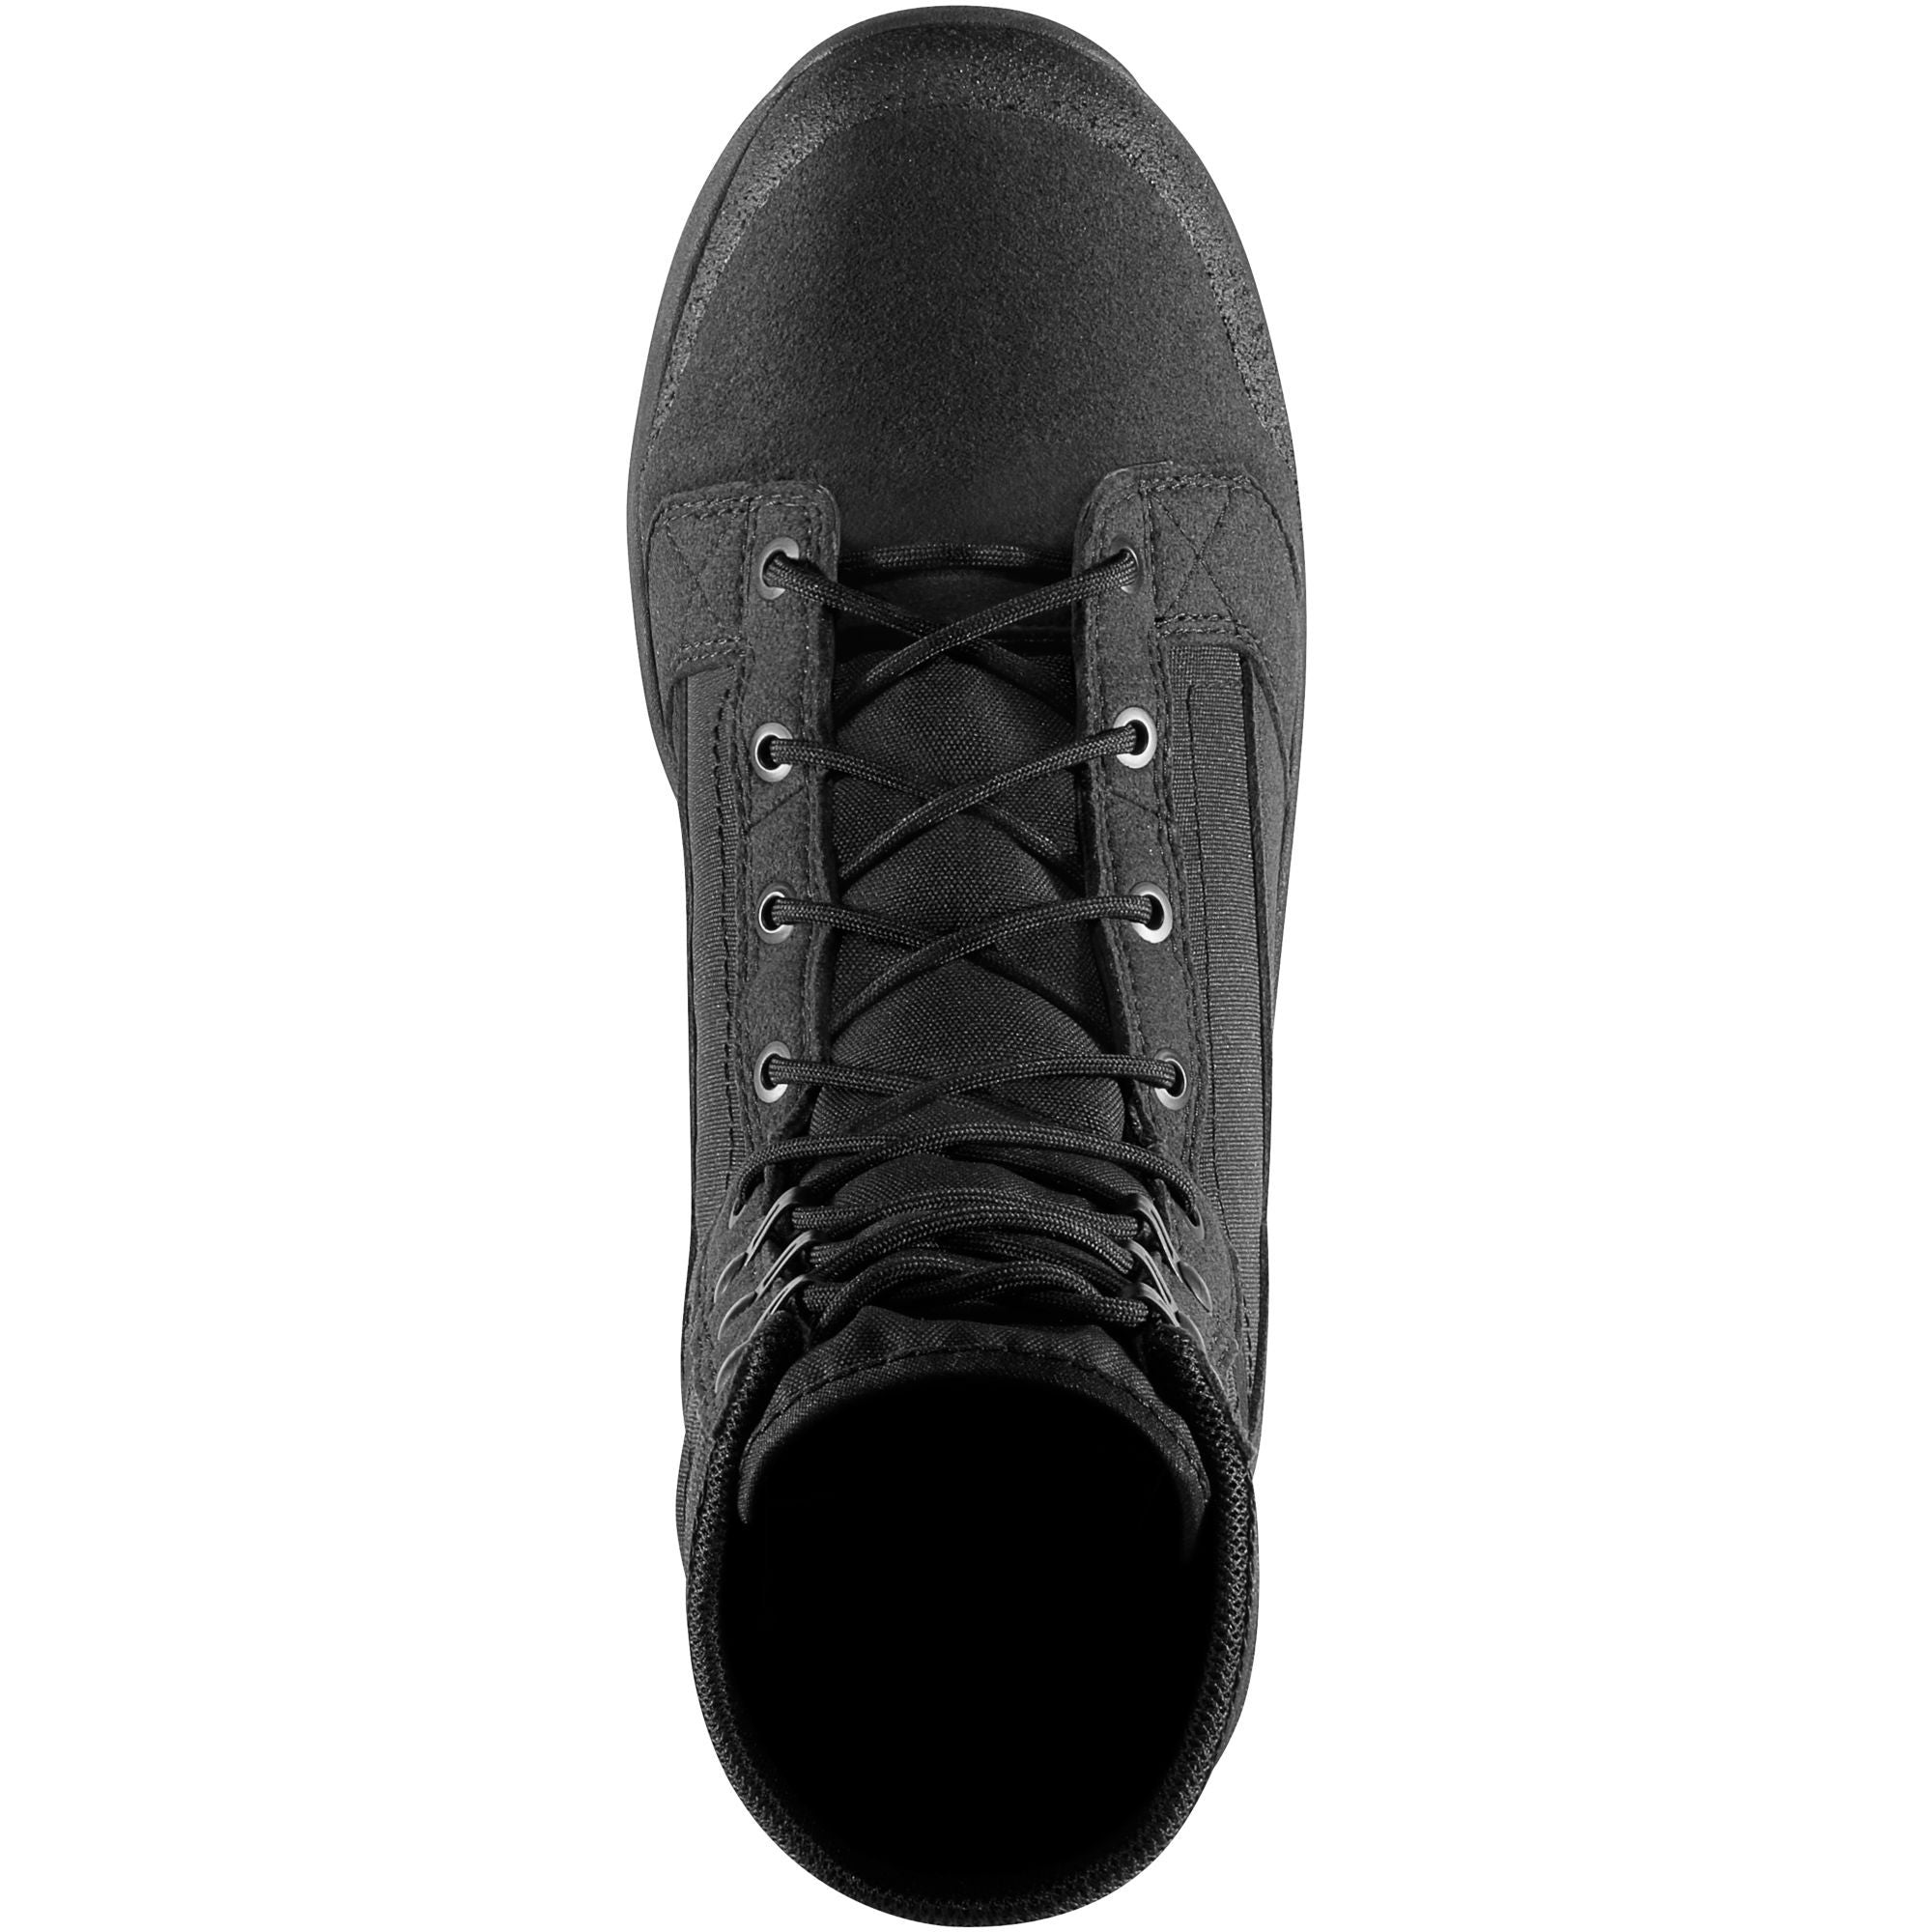 Danner Men's Tachayon Duty Boot - Black - 50120  - Overlook Boots